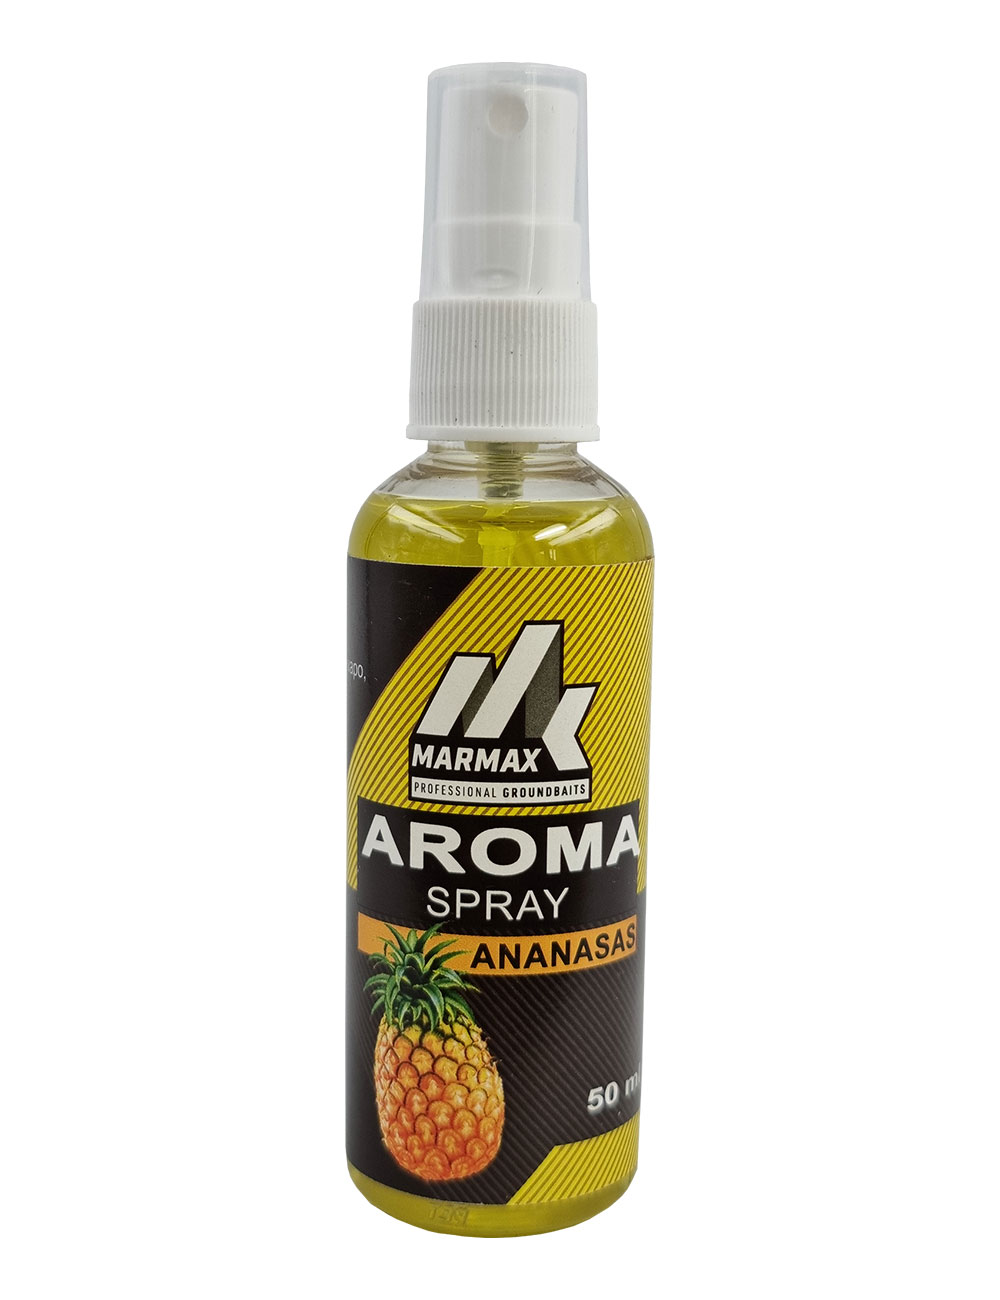 Aroma Spray - Ananasas (50 ml)